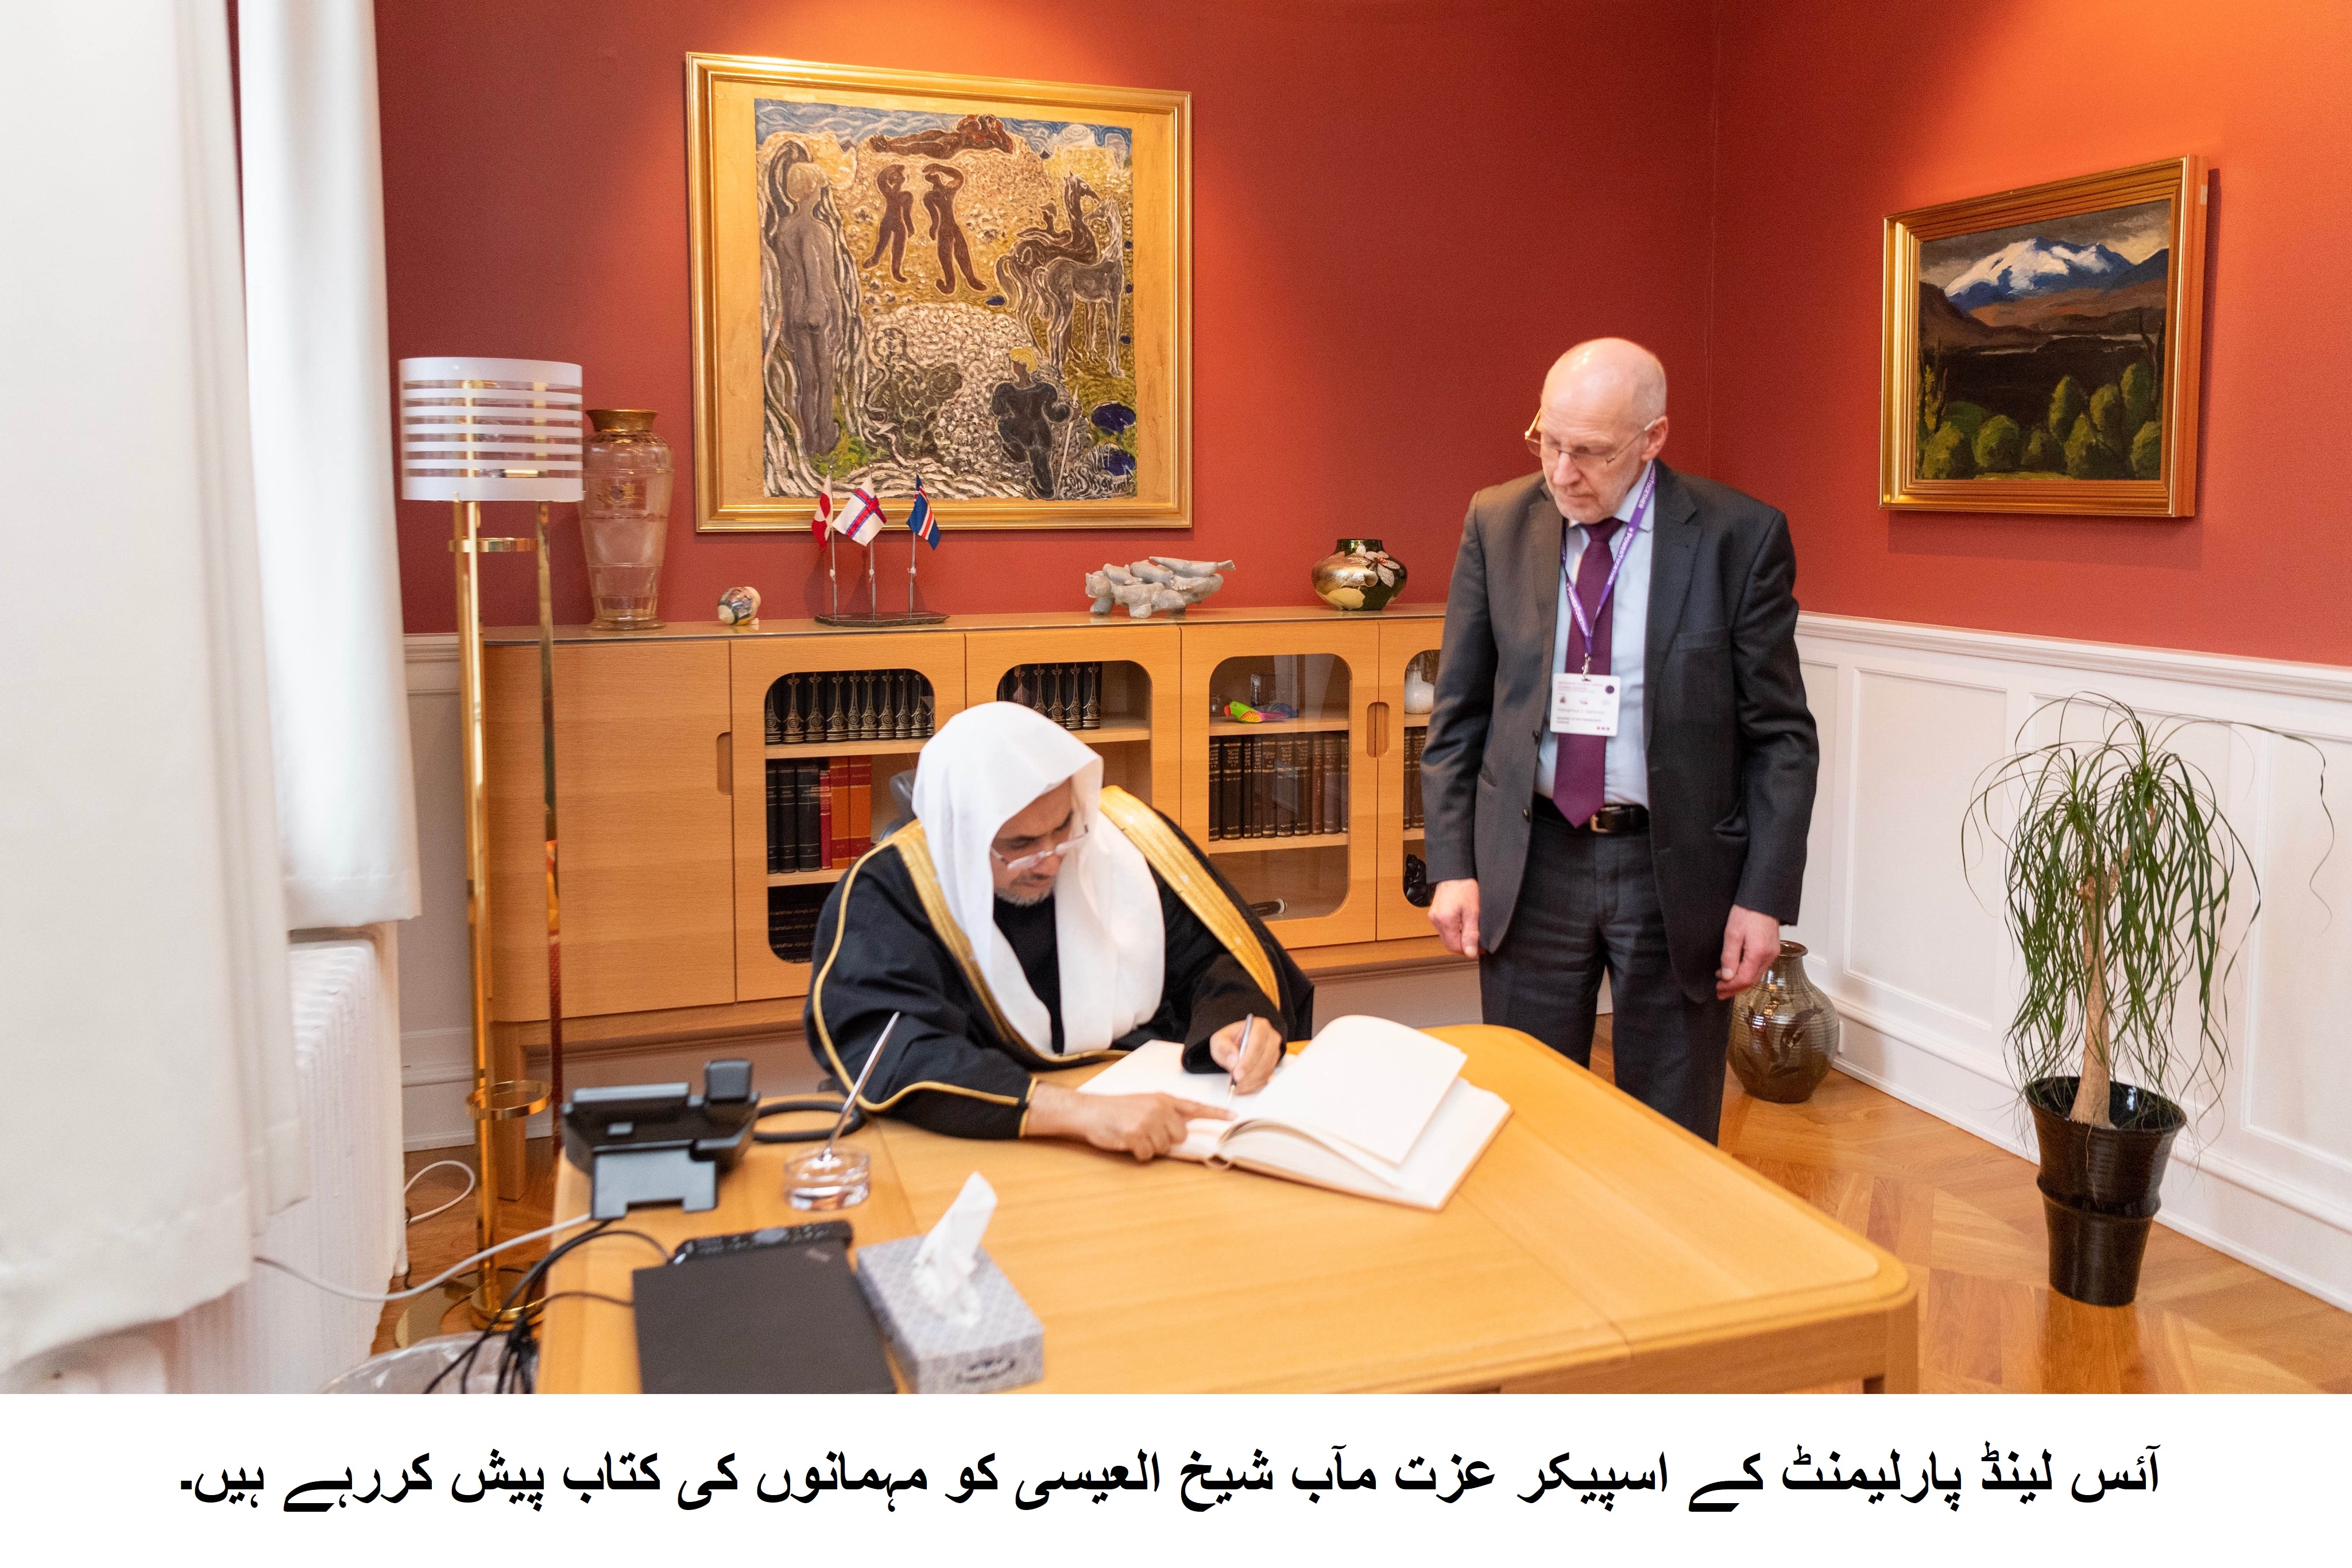 آئس لینڈ پارلیمنٹ کے اسپیکر عزت مآب شیخ العیسی کو مہمانوں کی کتاب پیش کررہے ہیں۔